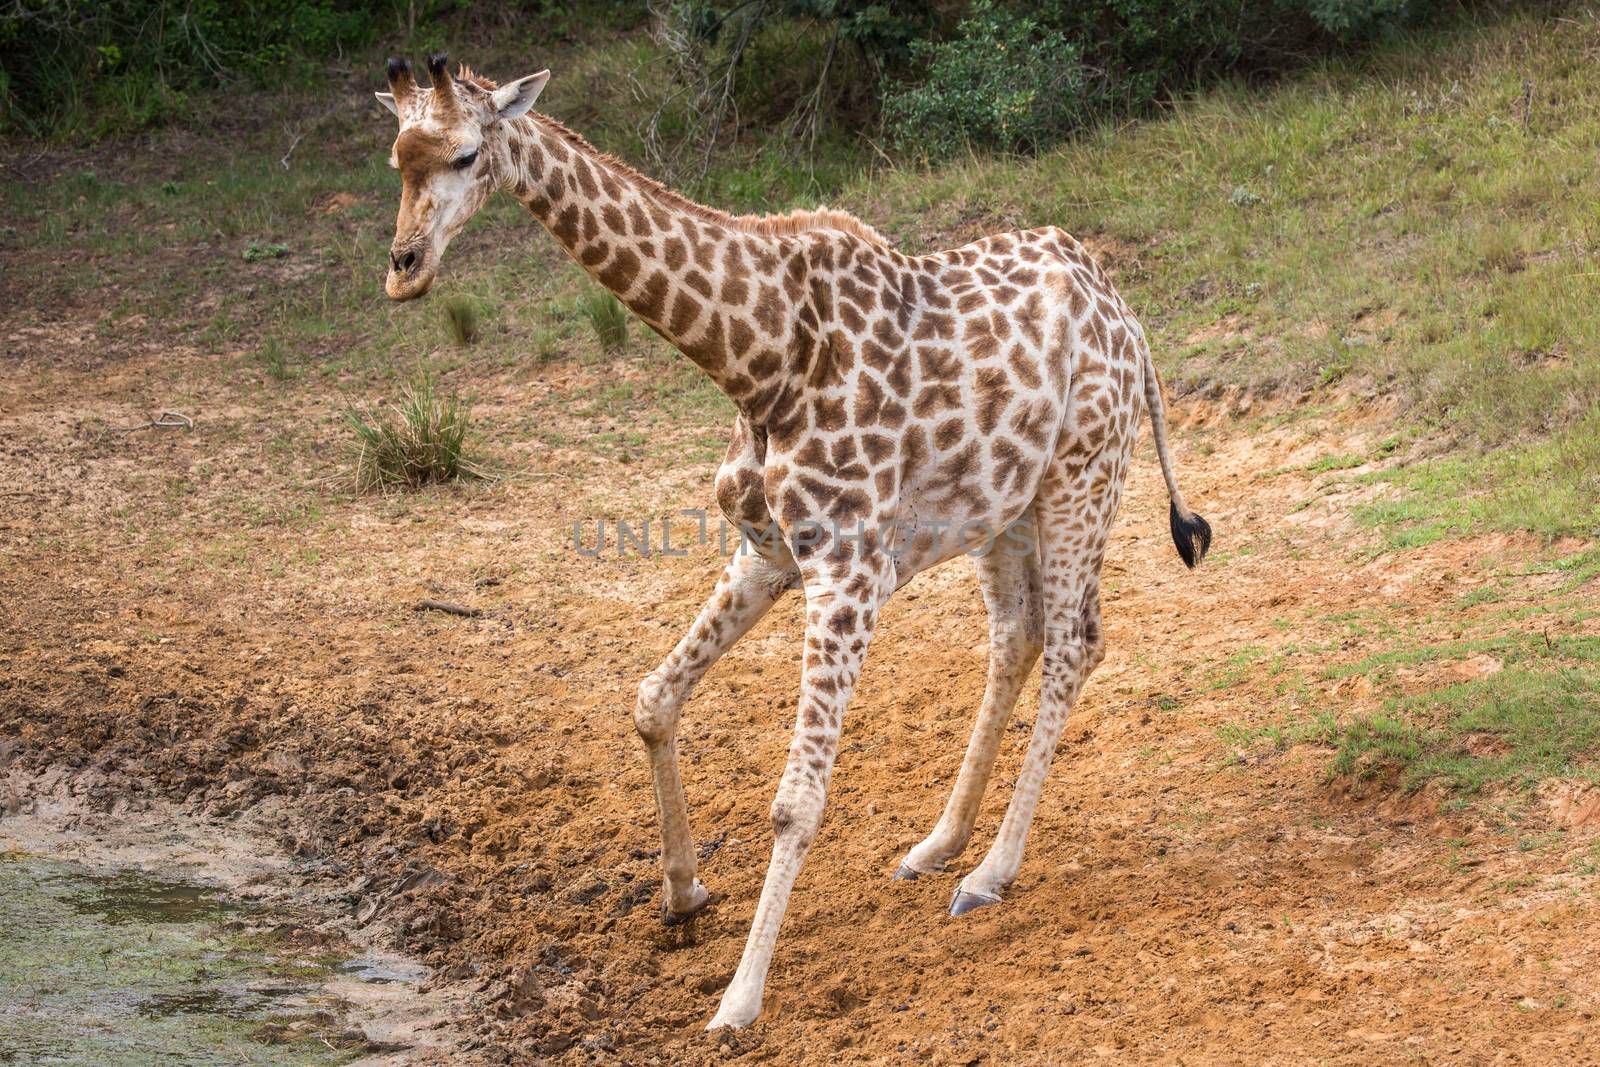 Giraffe at Waterhole by fouroaks